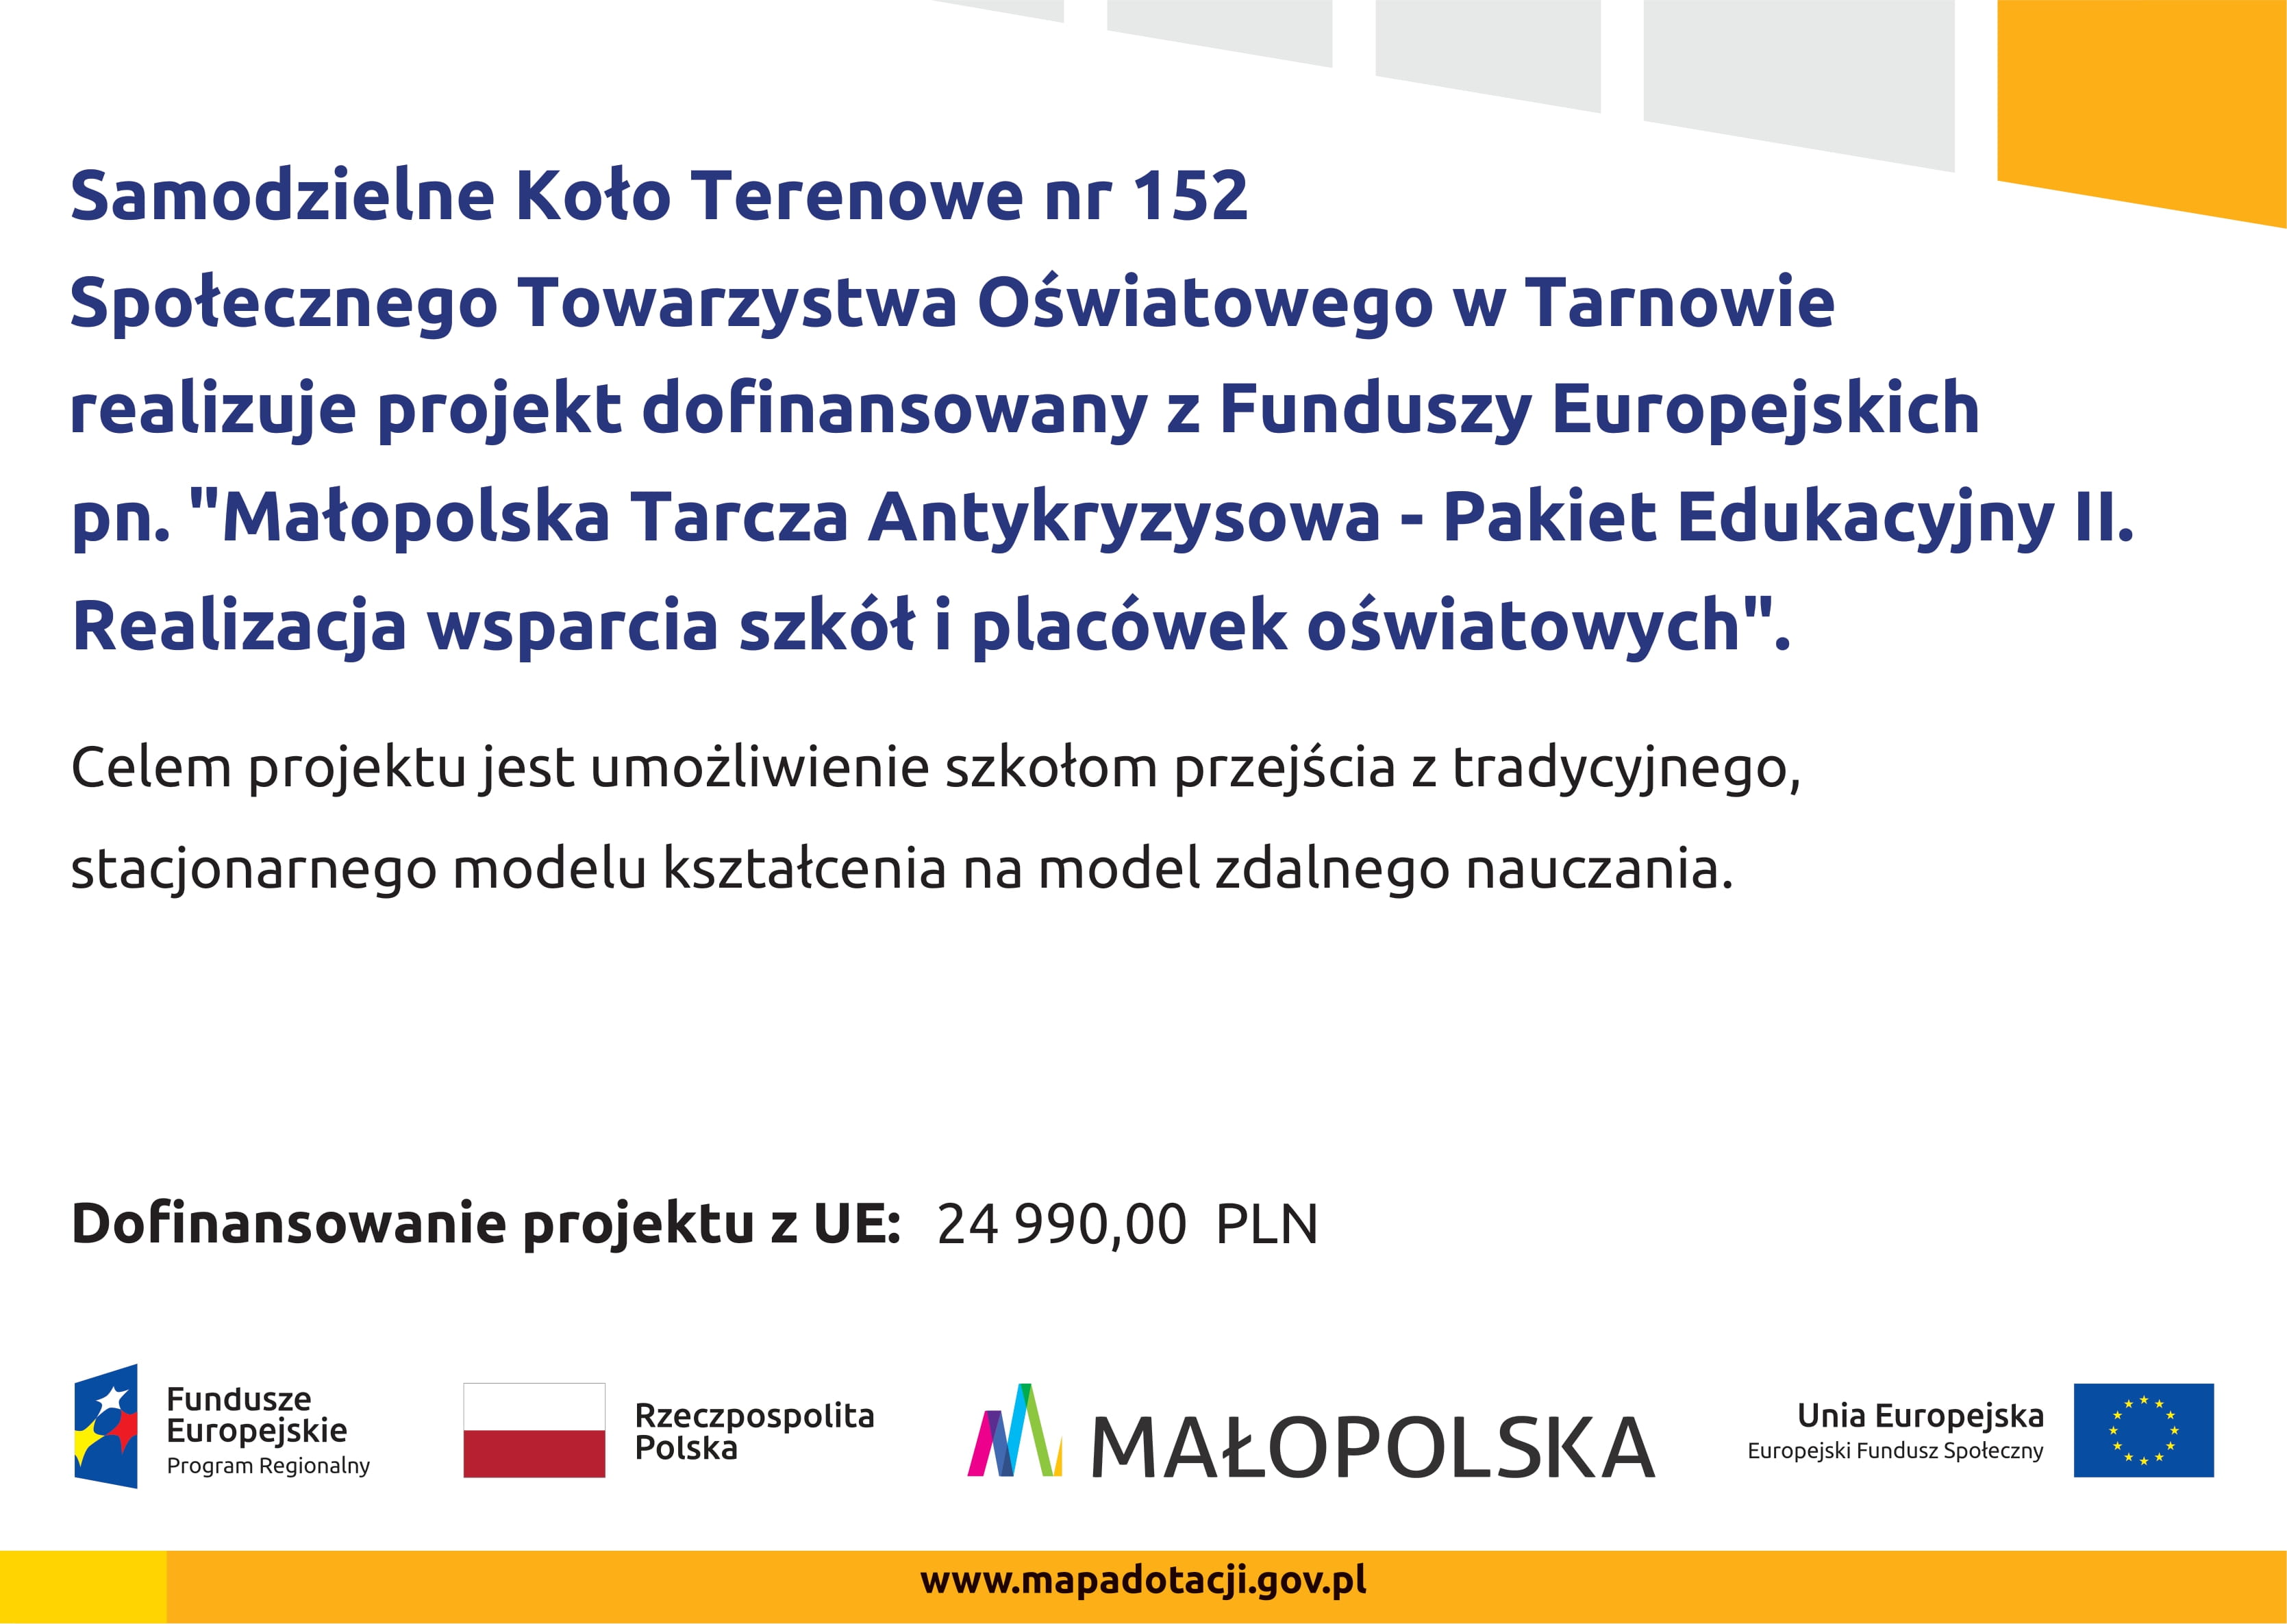 Małopolska Tarcza Antykryzysowa - Pakiet Edukacyjny II. Realizacja wsparcia szkół i placówek oświatowych